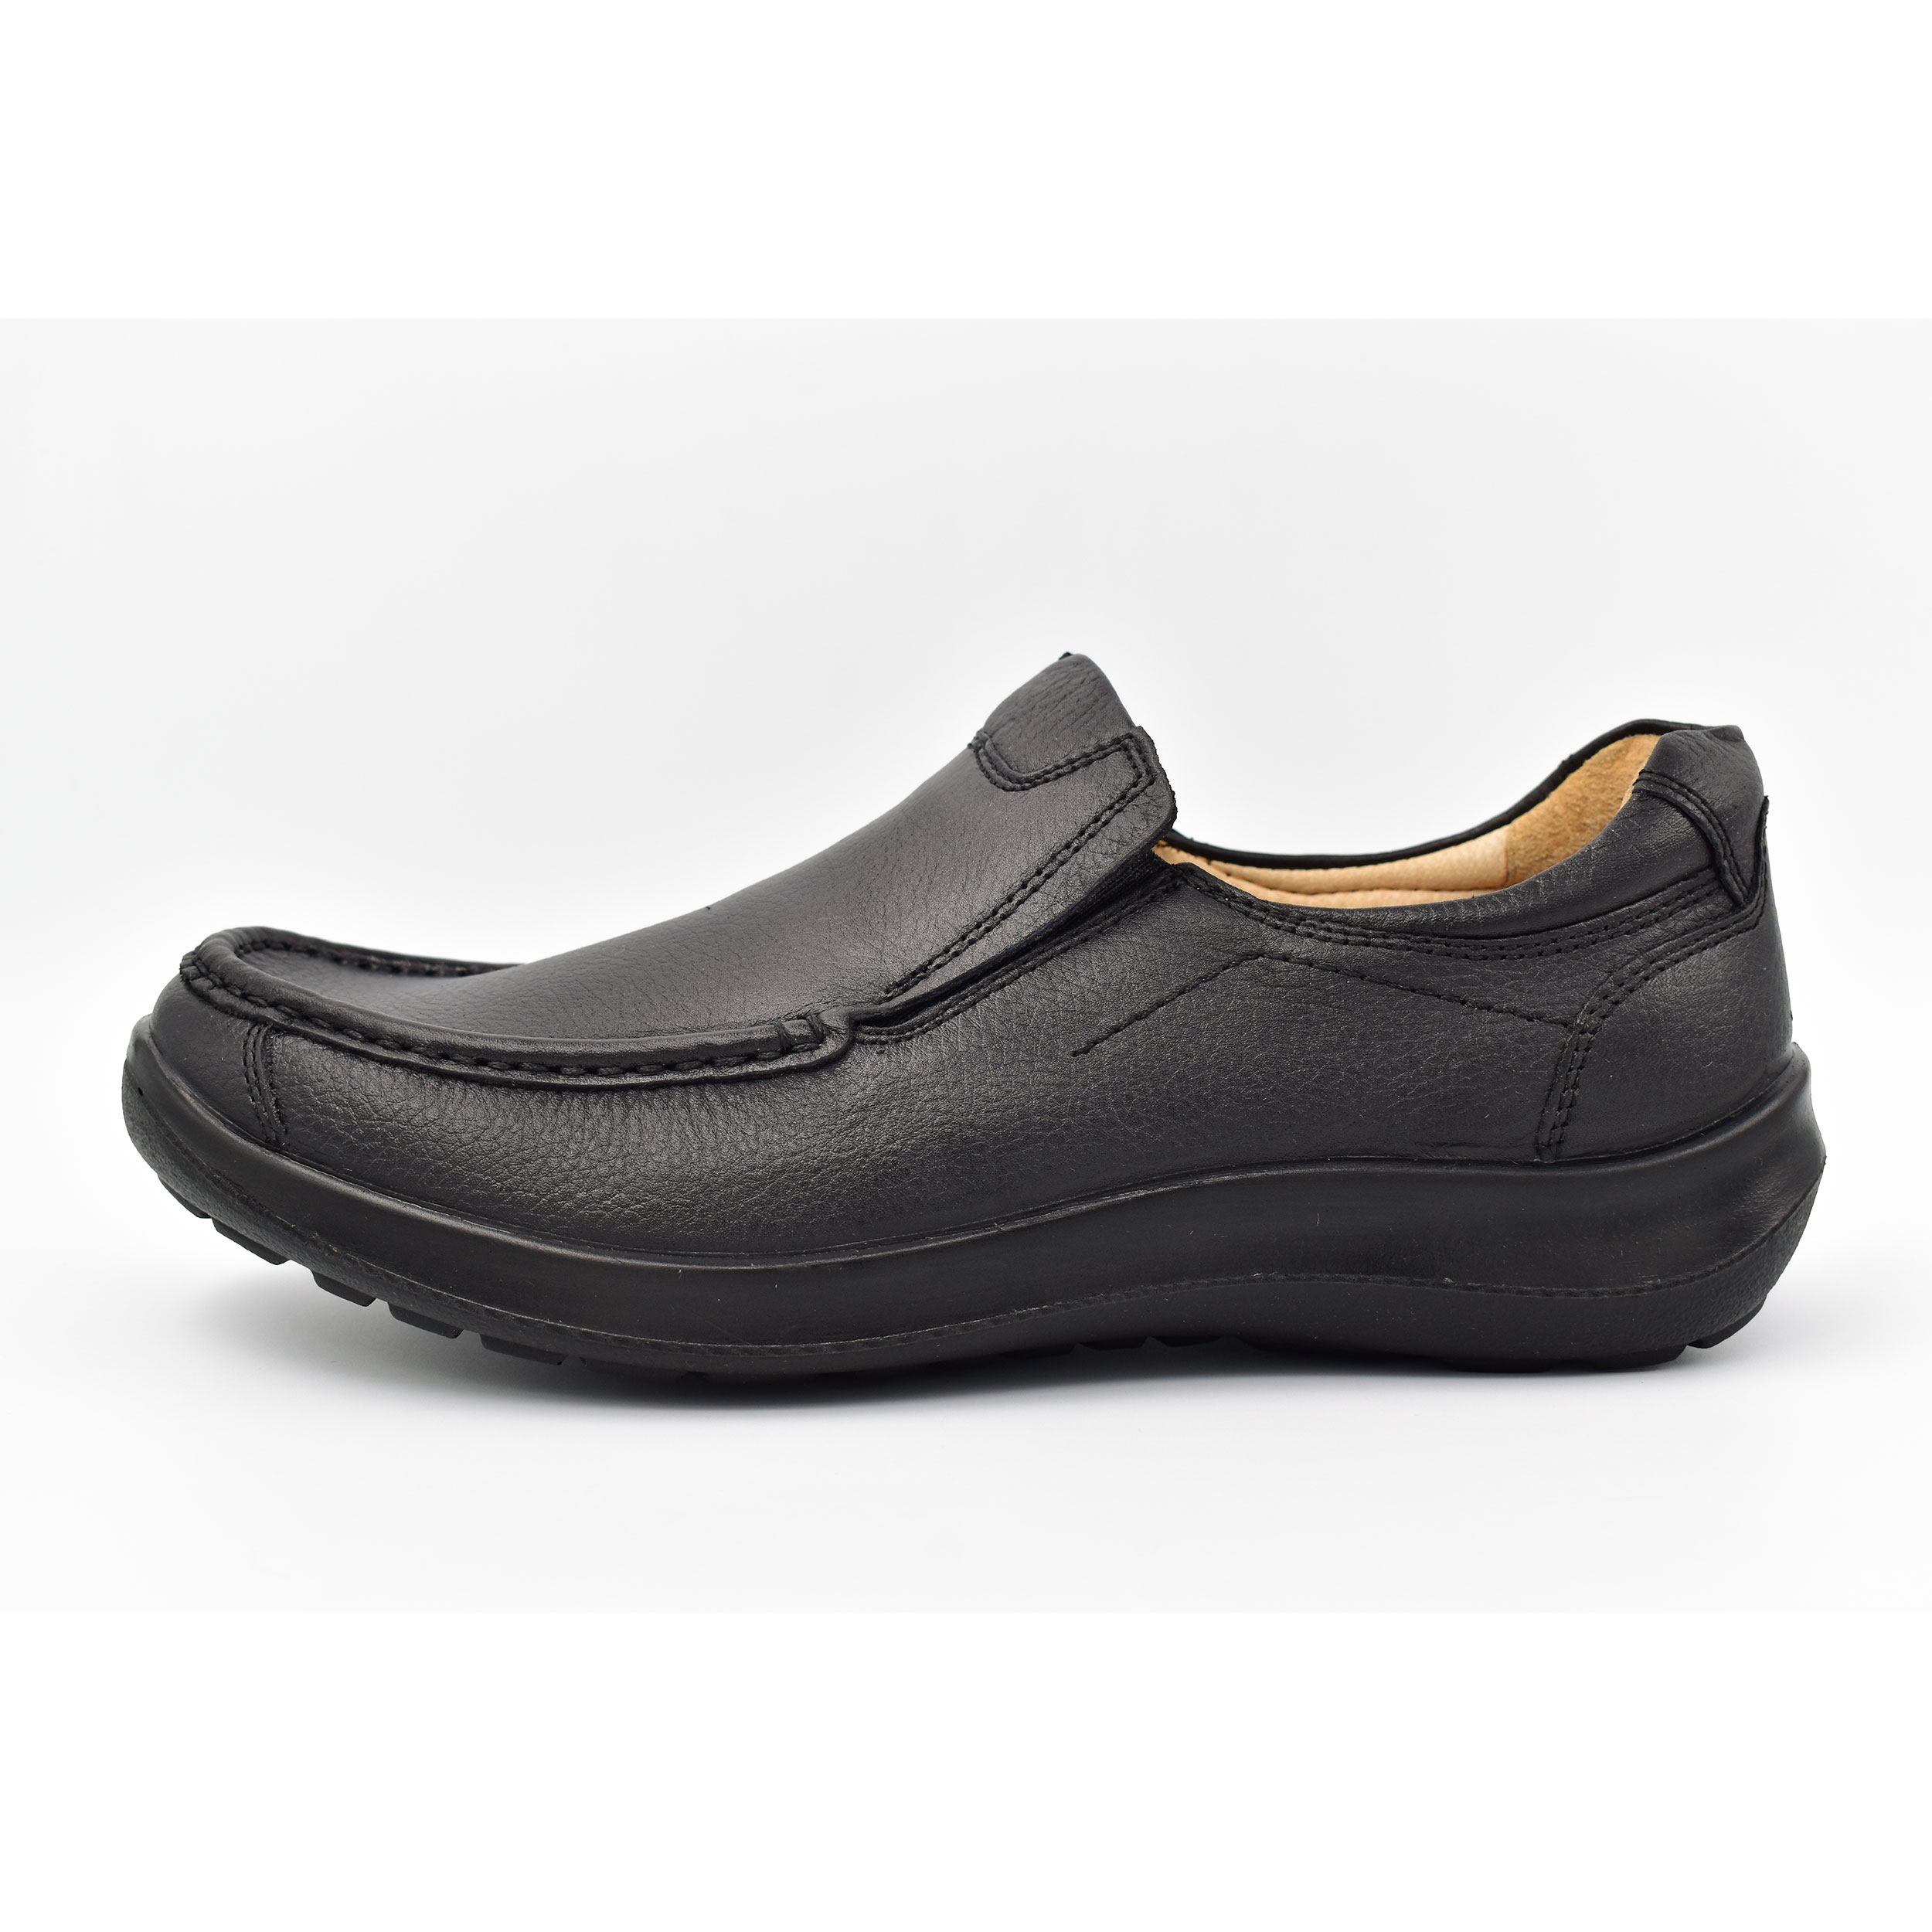 کفش روزمره مردانه شرکت کفش البرز مدل KV کد 2383-2 -  - 8